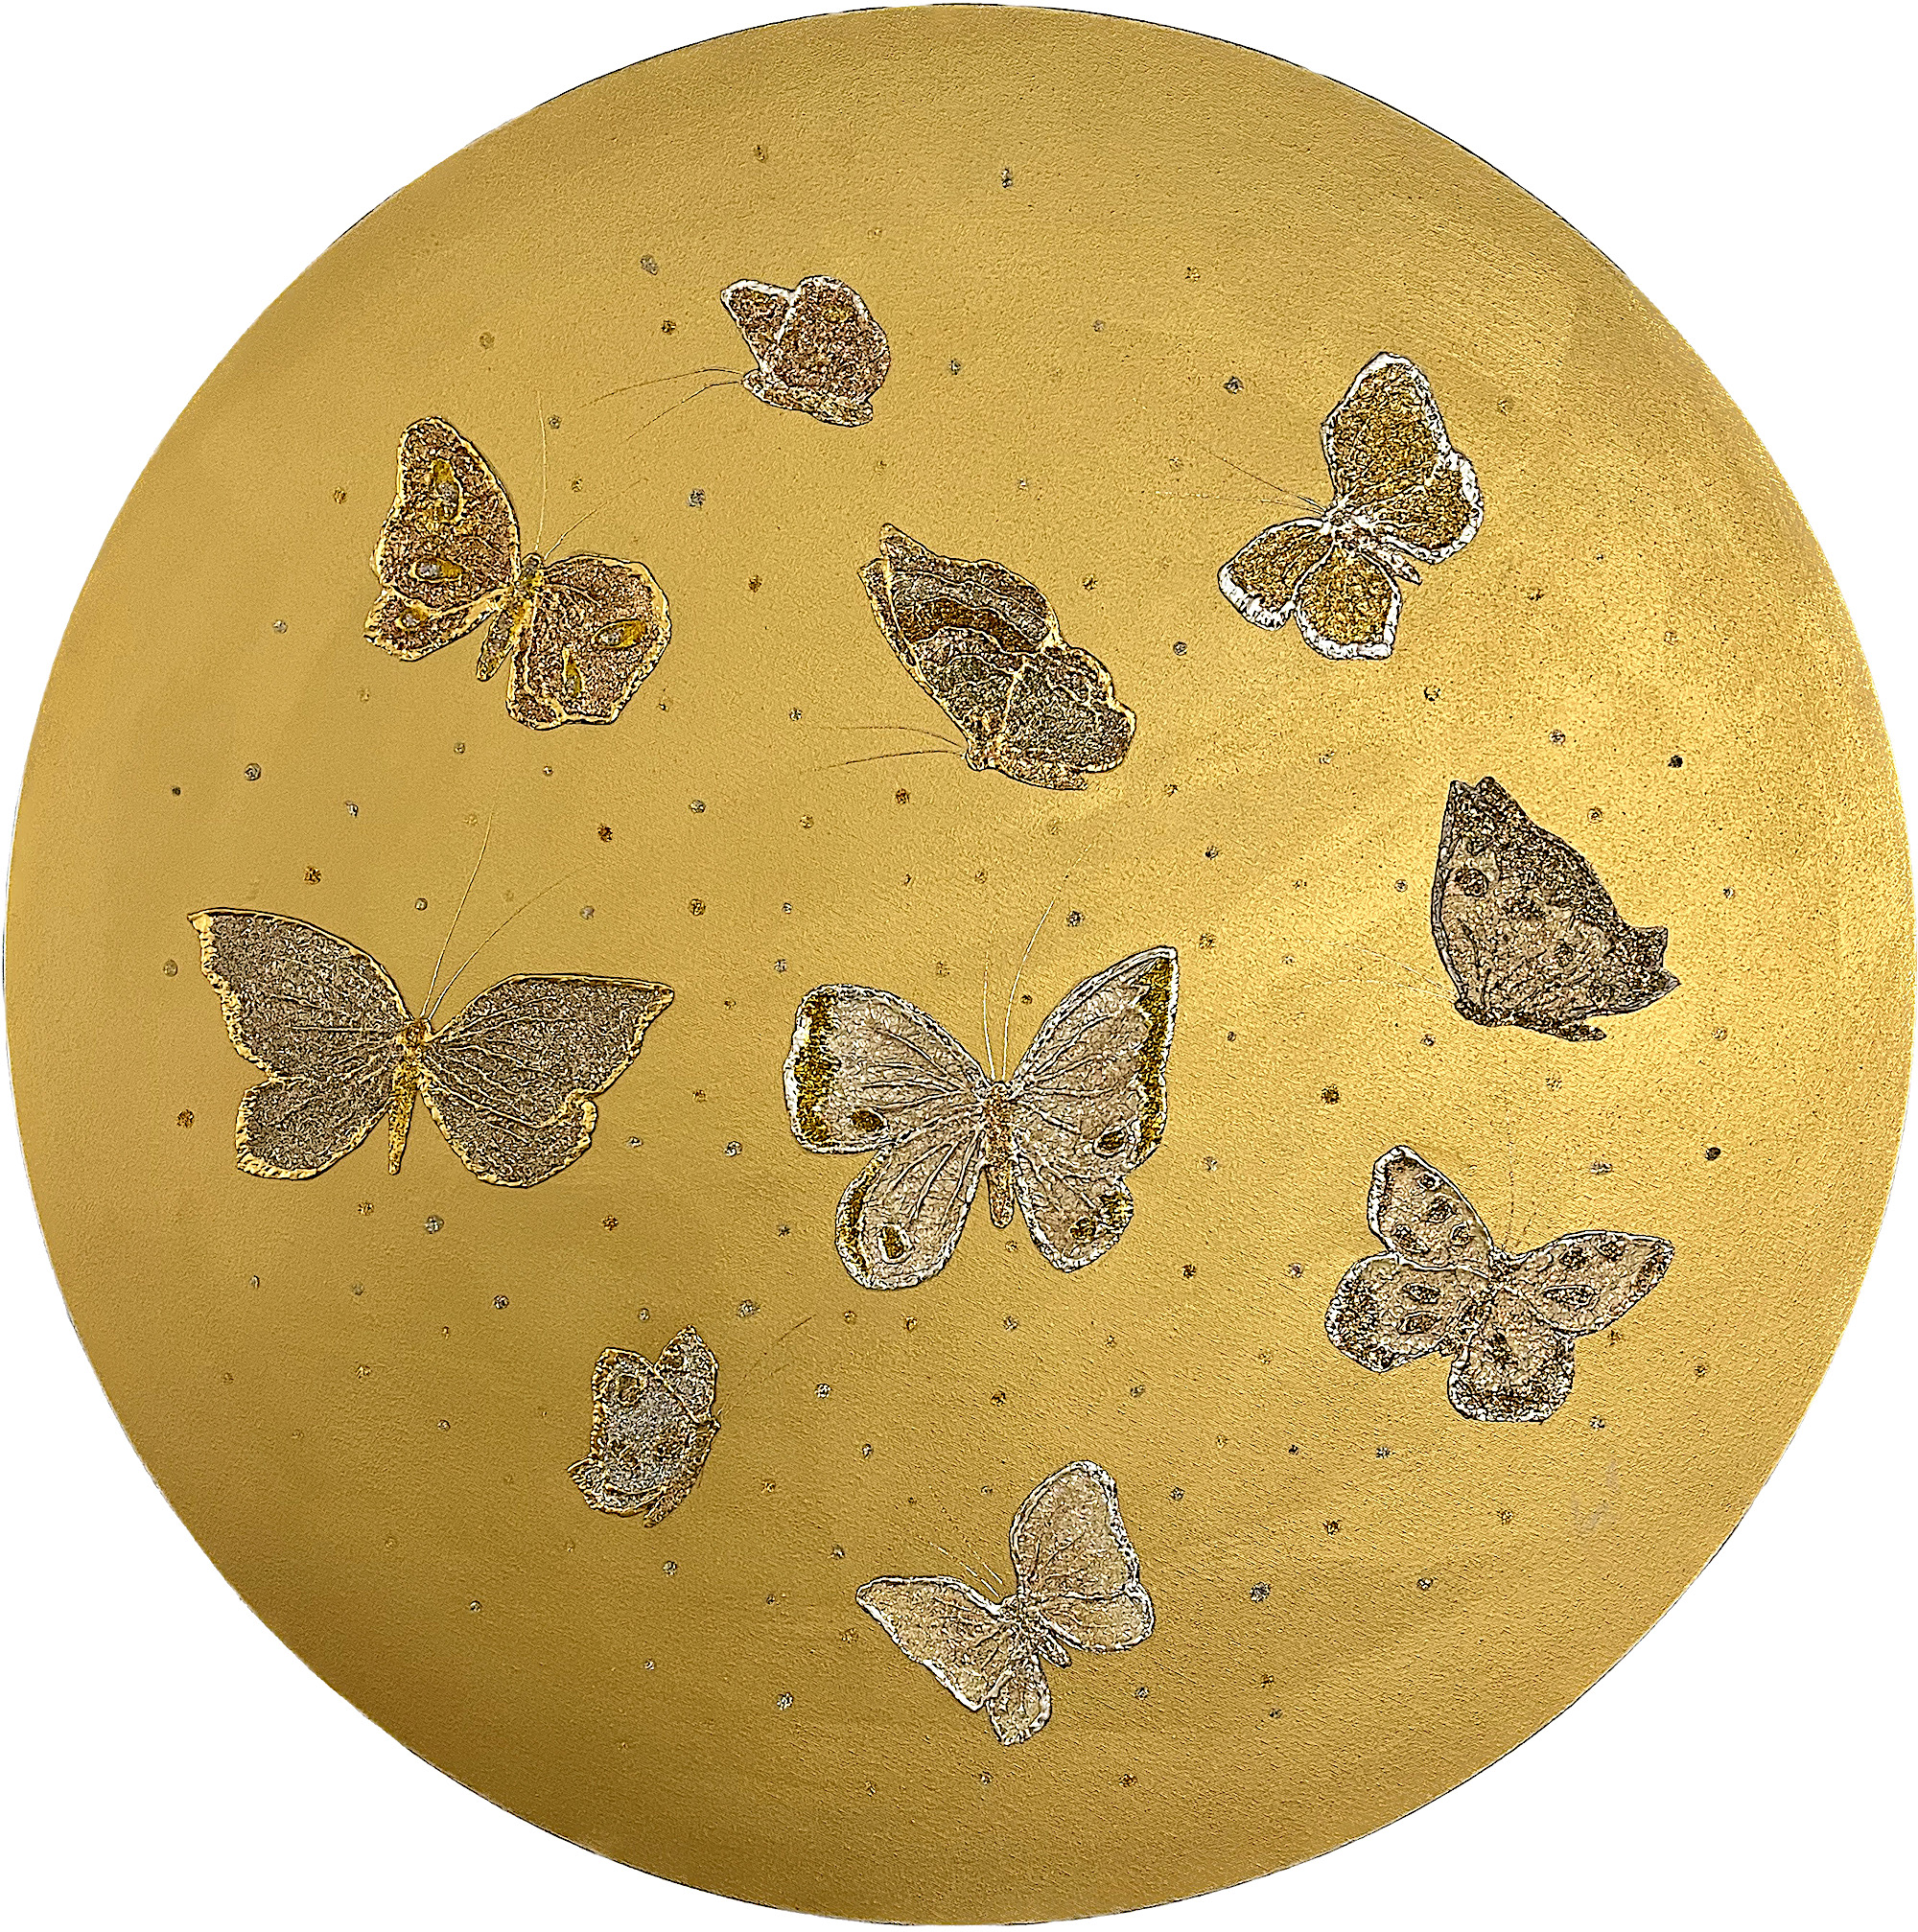 MAMI Images et Poésie, Air Papillon (technique mixte sur toile, 80 cm diamètre)